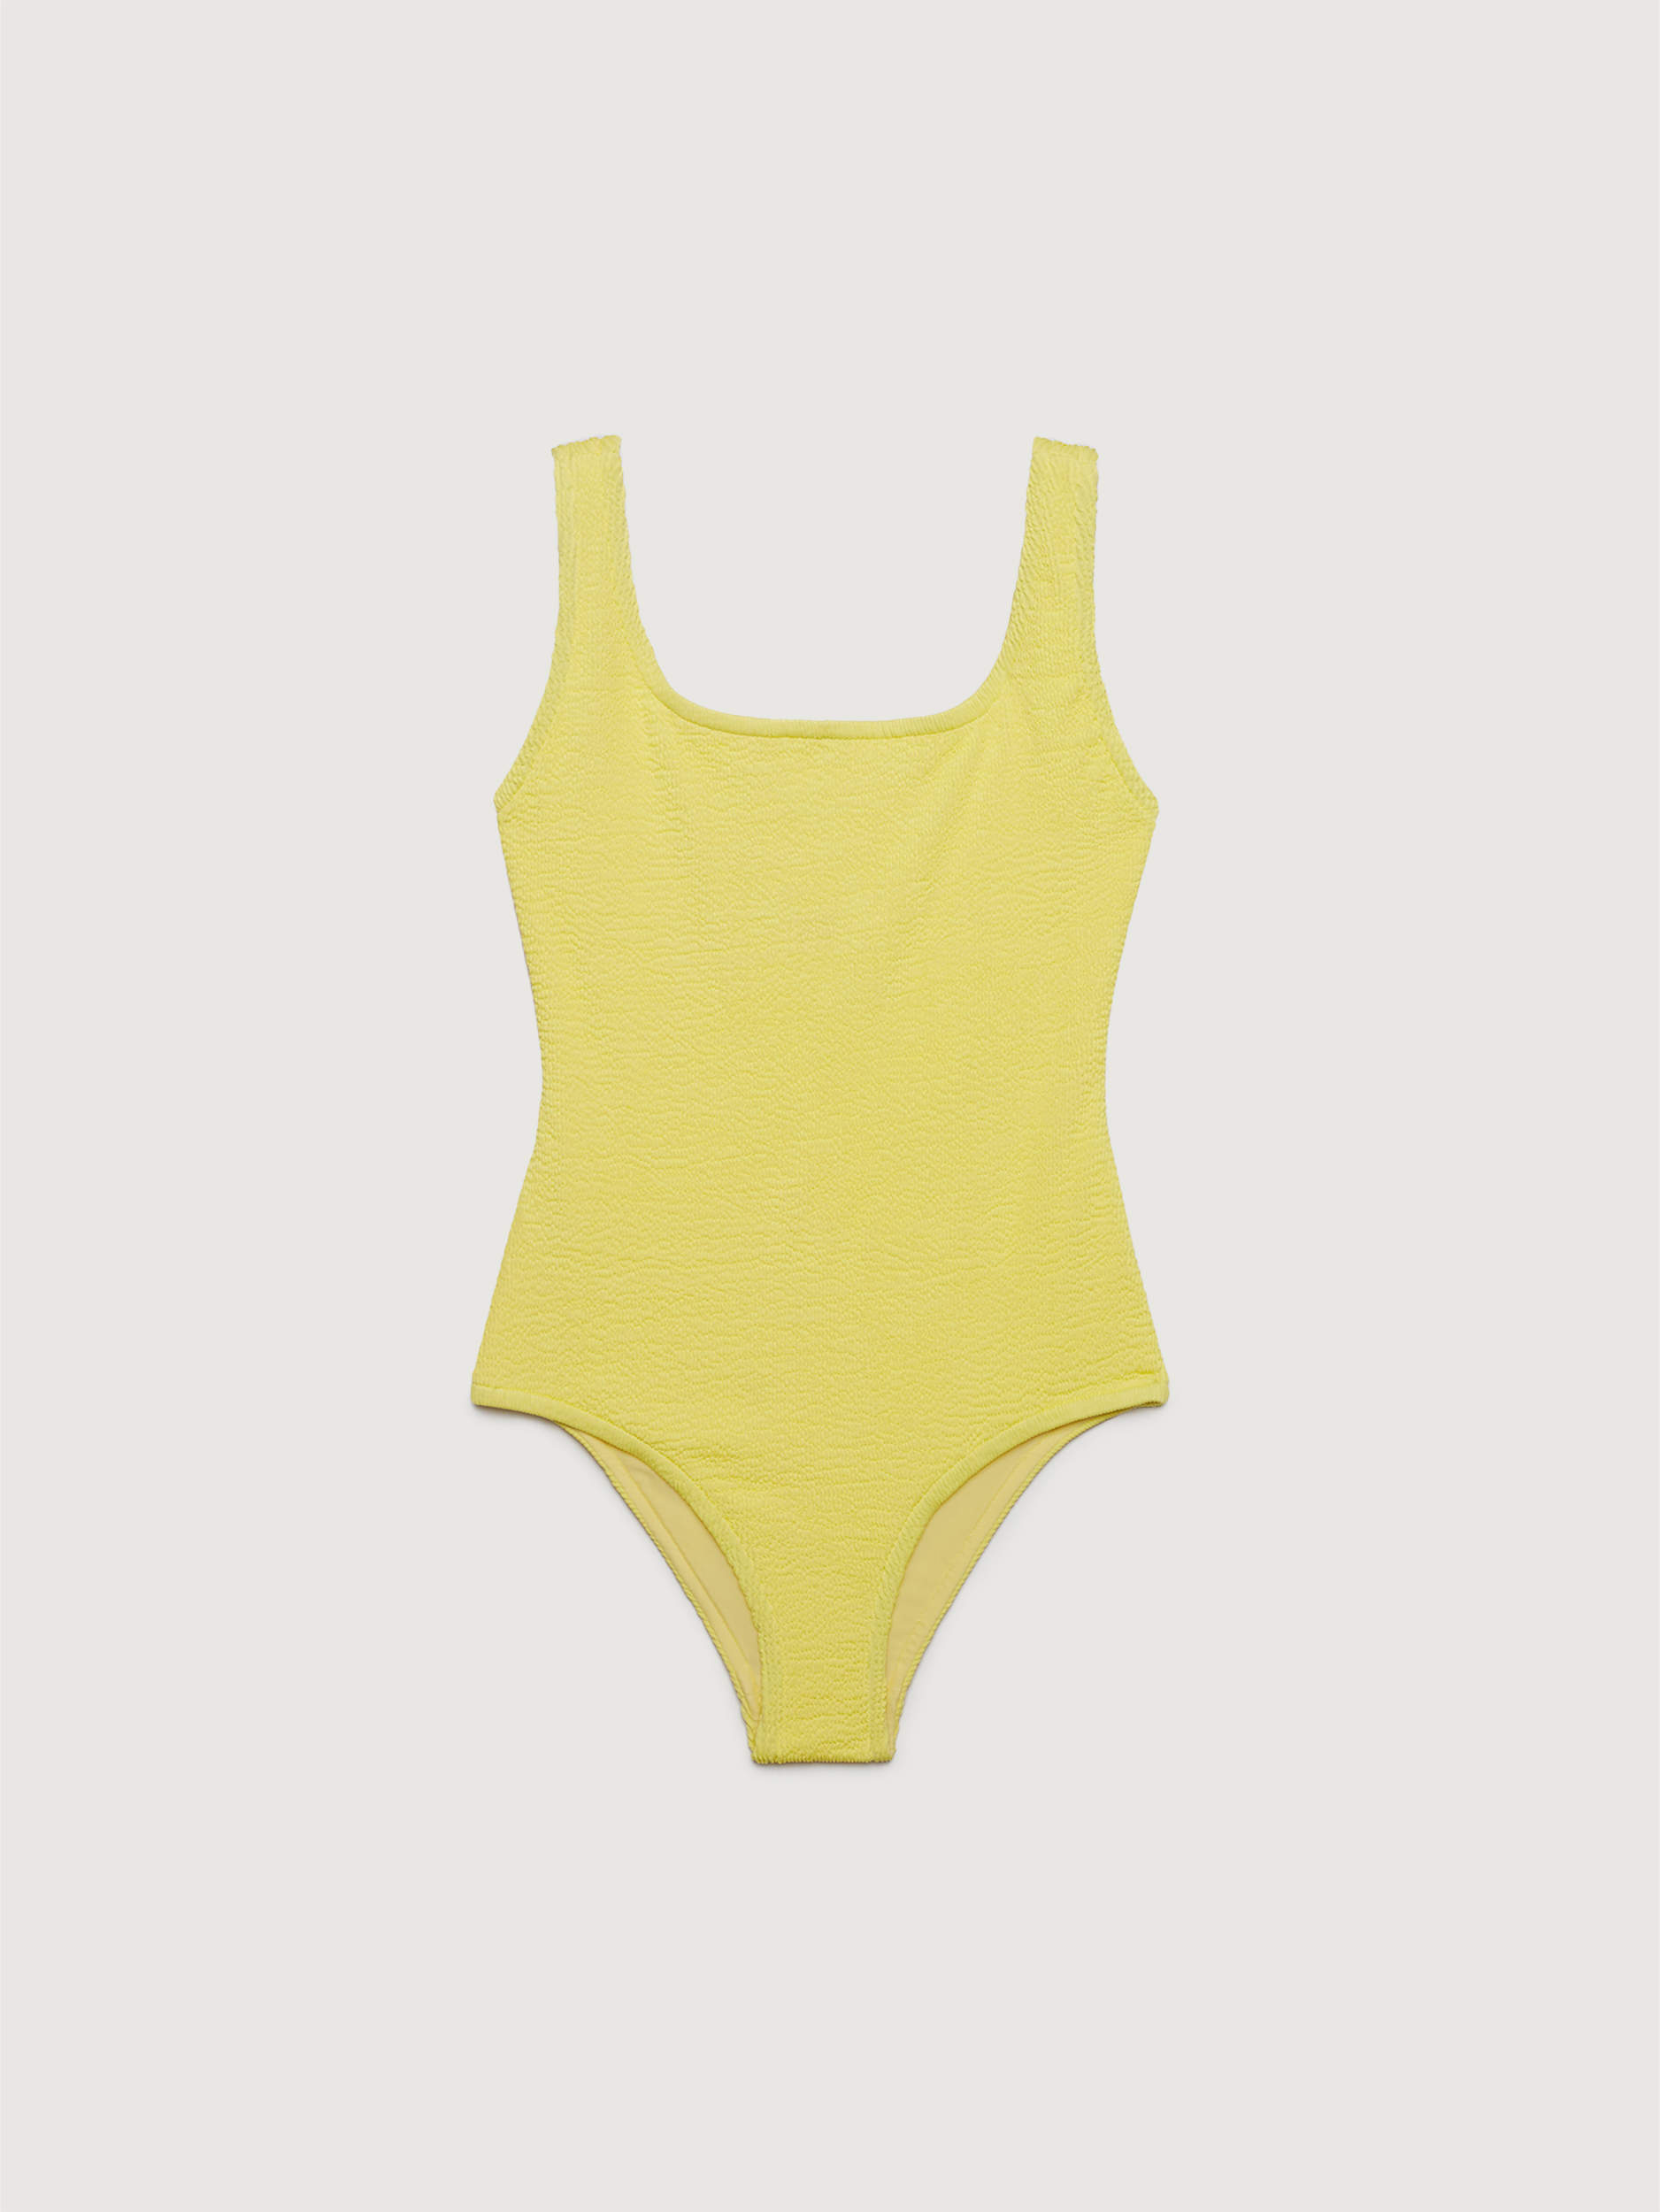 Желтый купальник в интернет-магазине VIPkupalnik